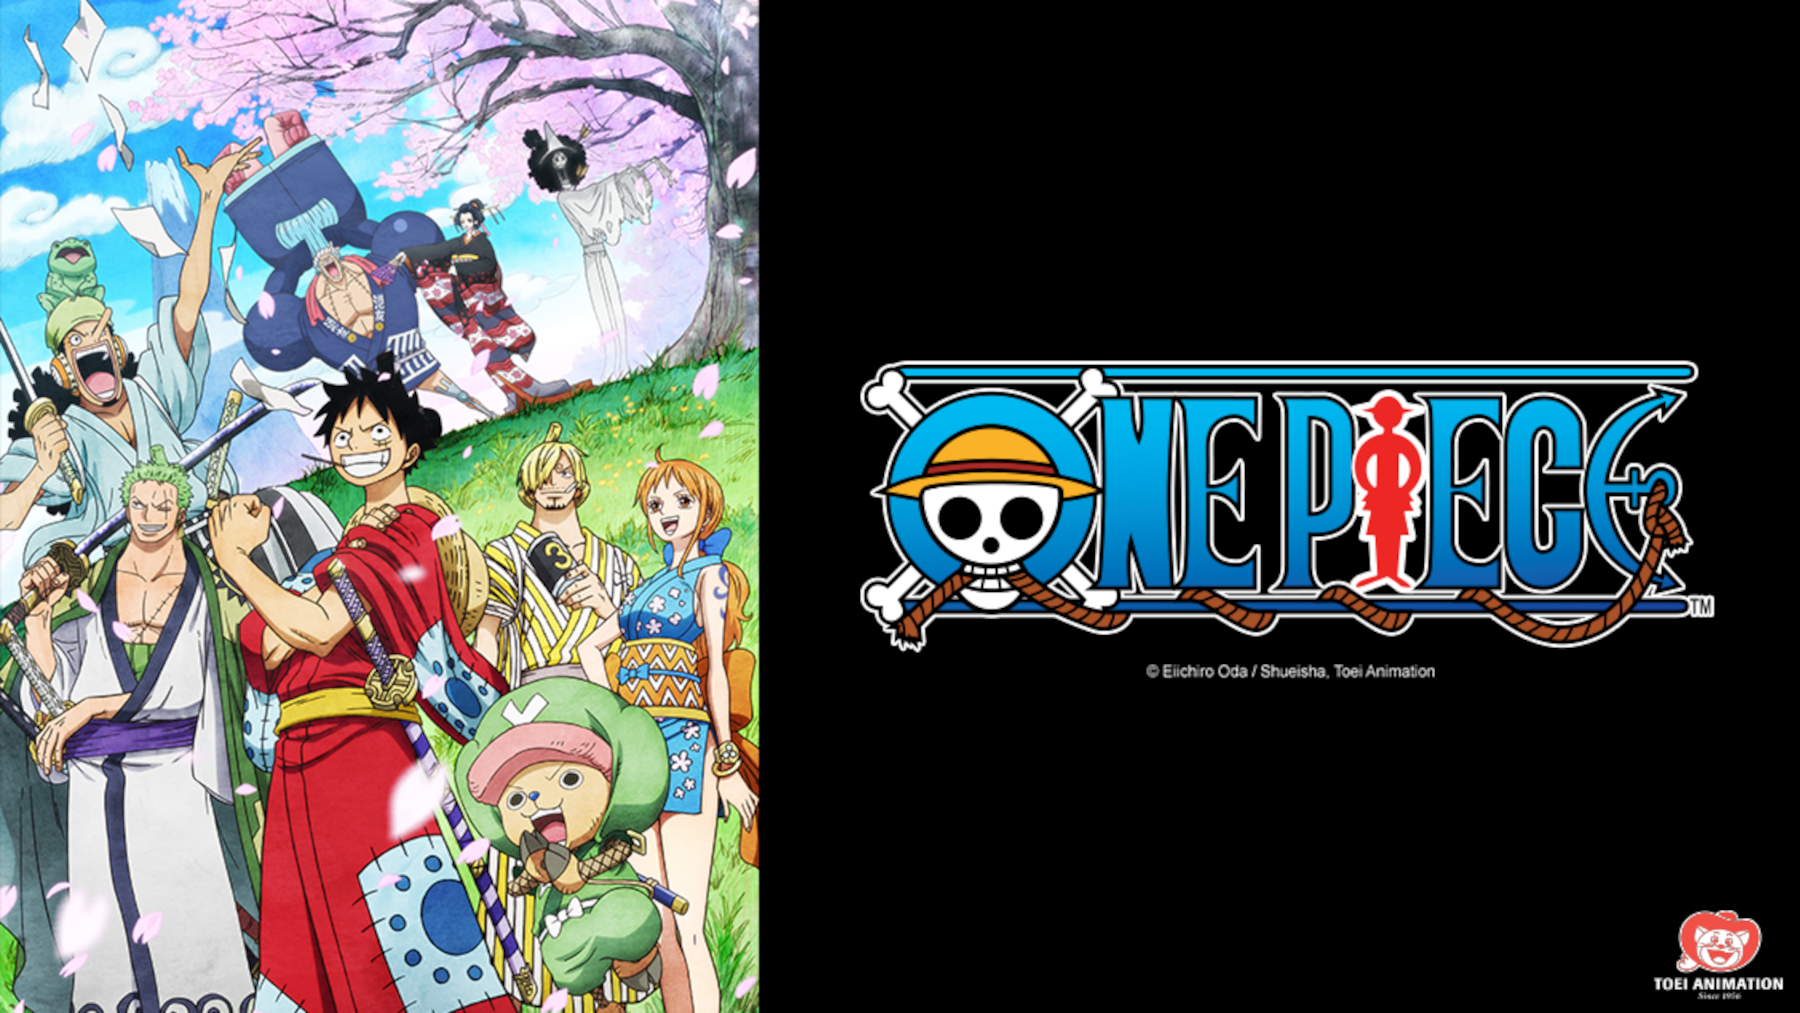 62 'One Piece' Episodes Added to Netflix